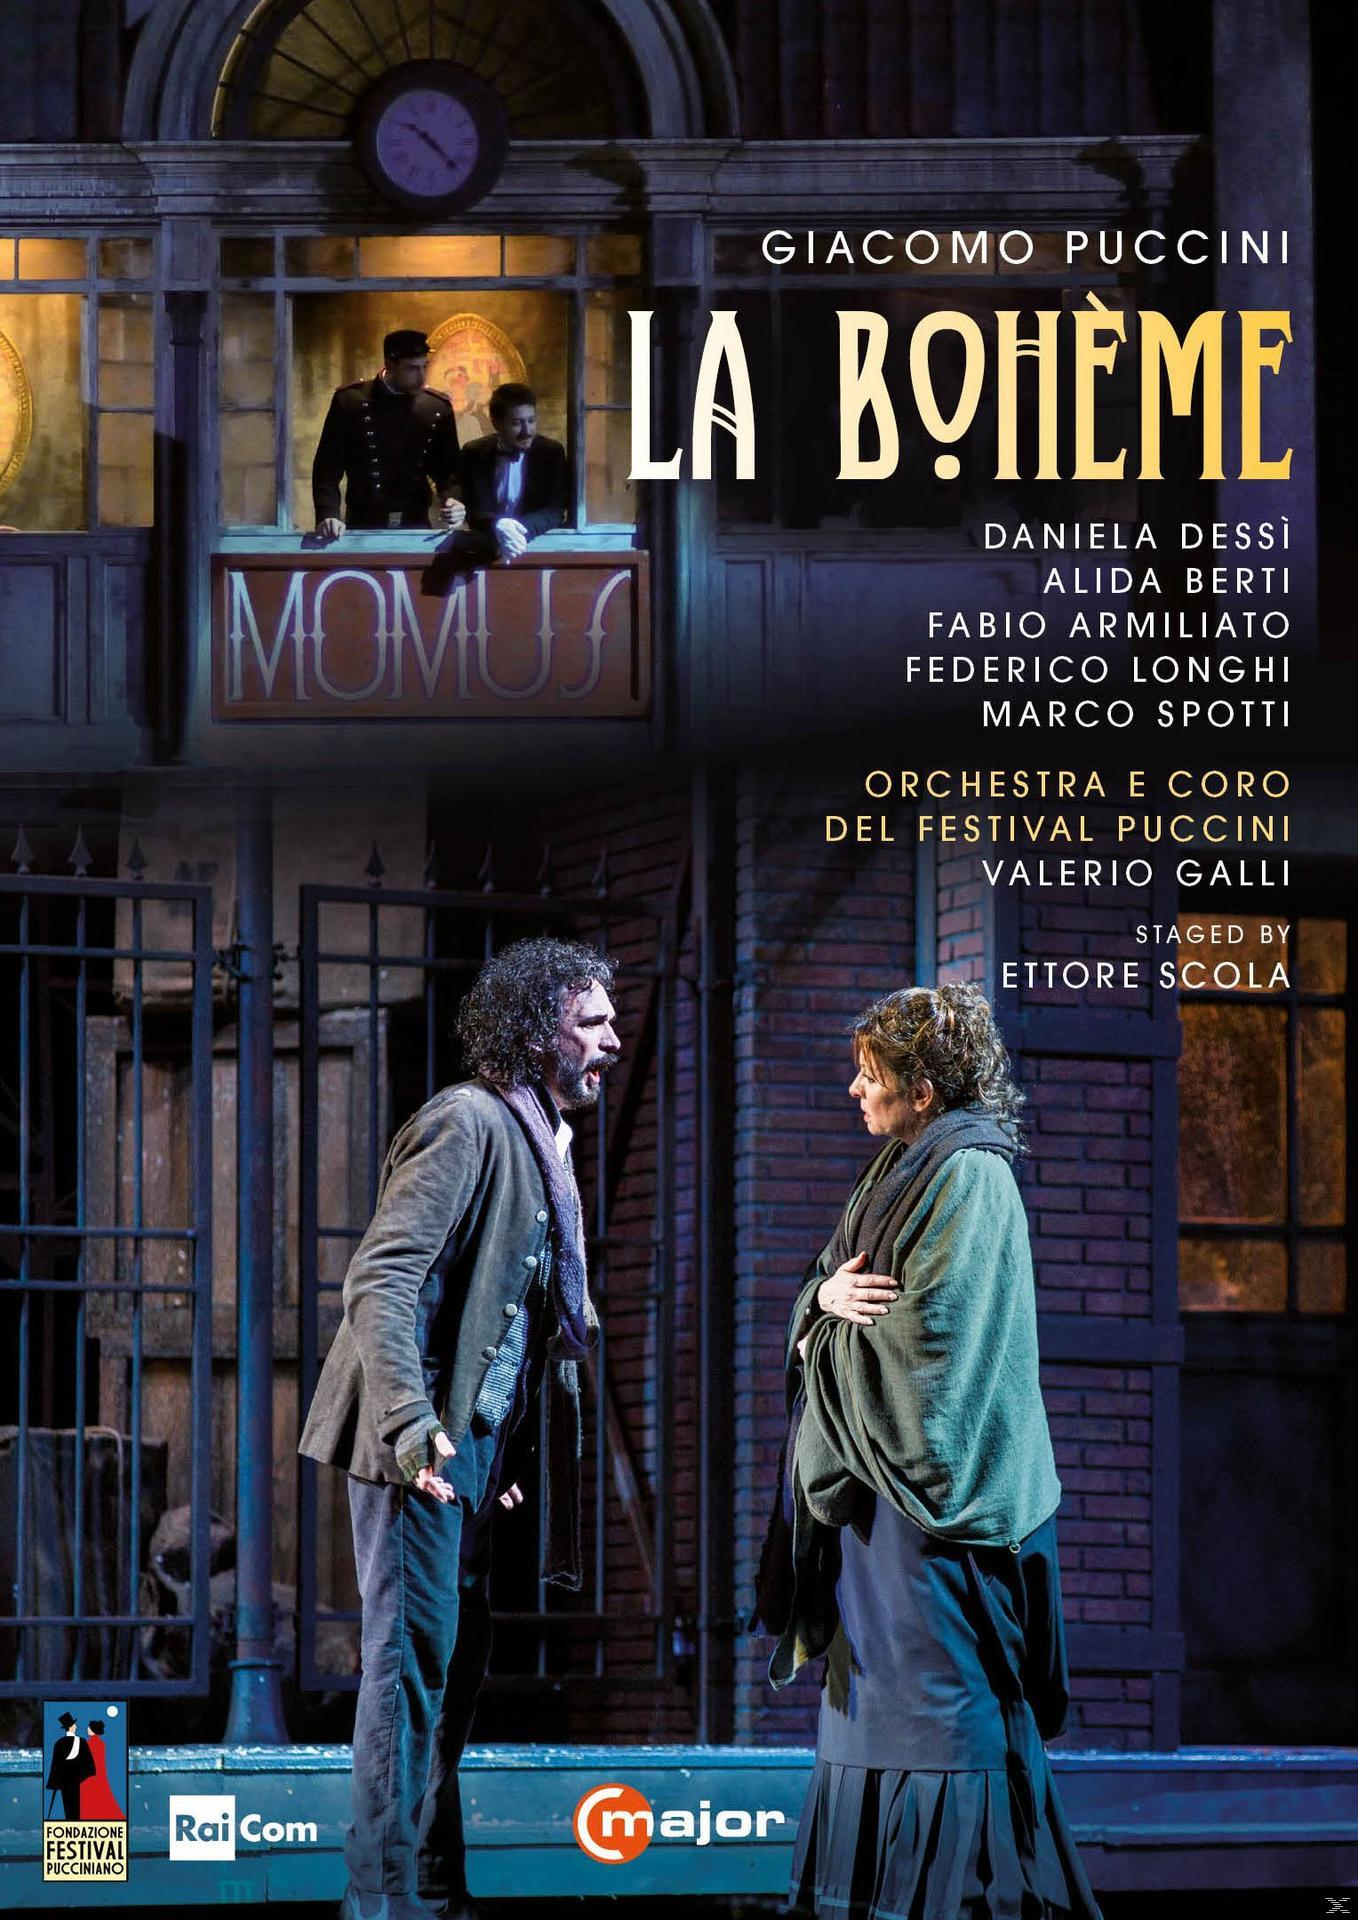 VARIOUS, Orchestra E Coro Del Festival La (DVD) Boheme - Puccini 